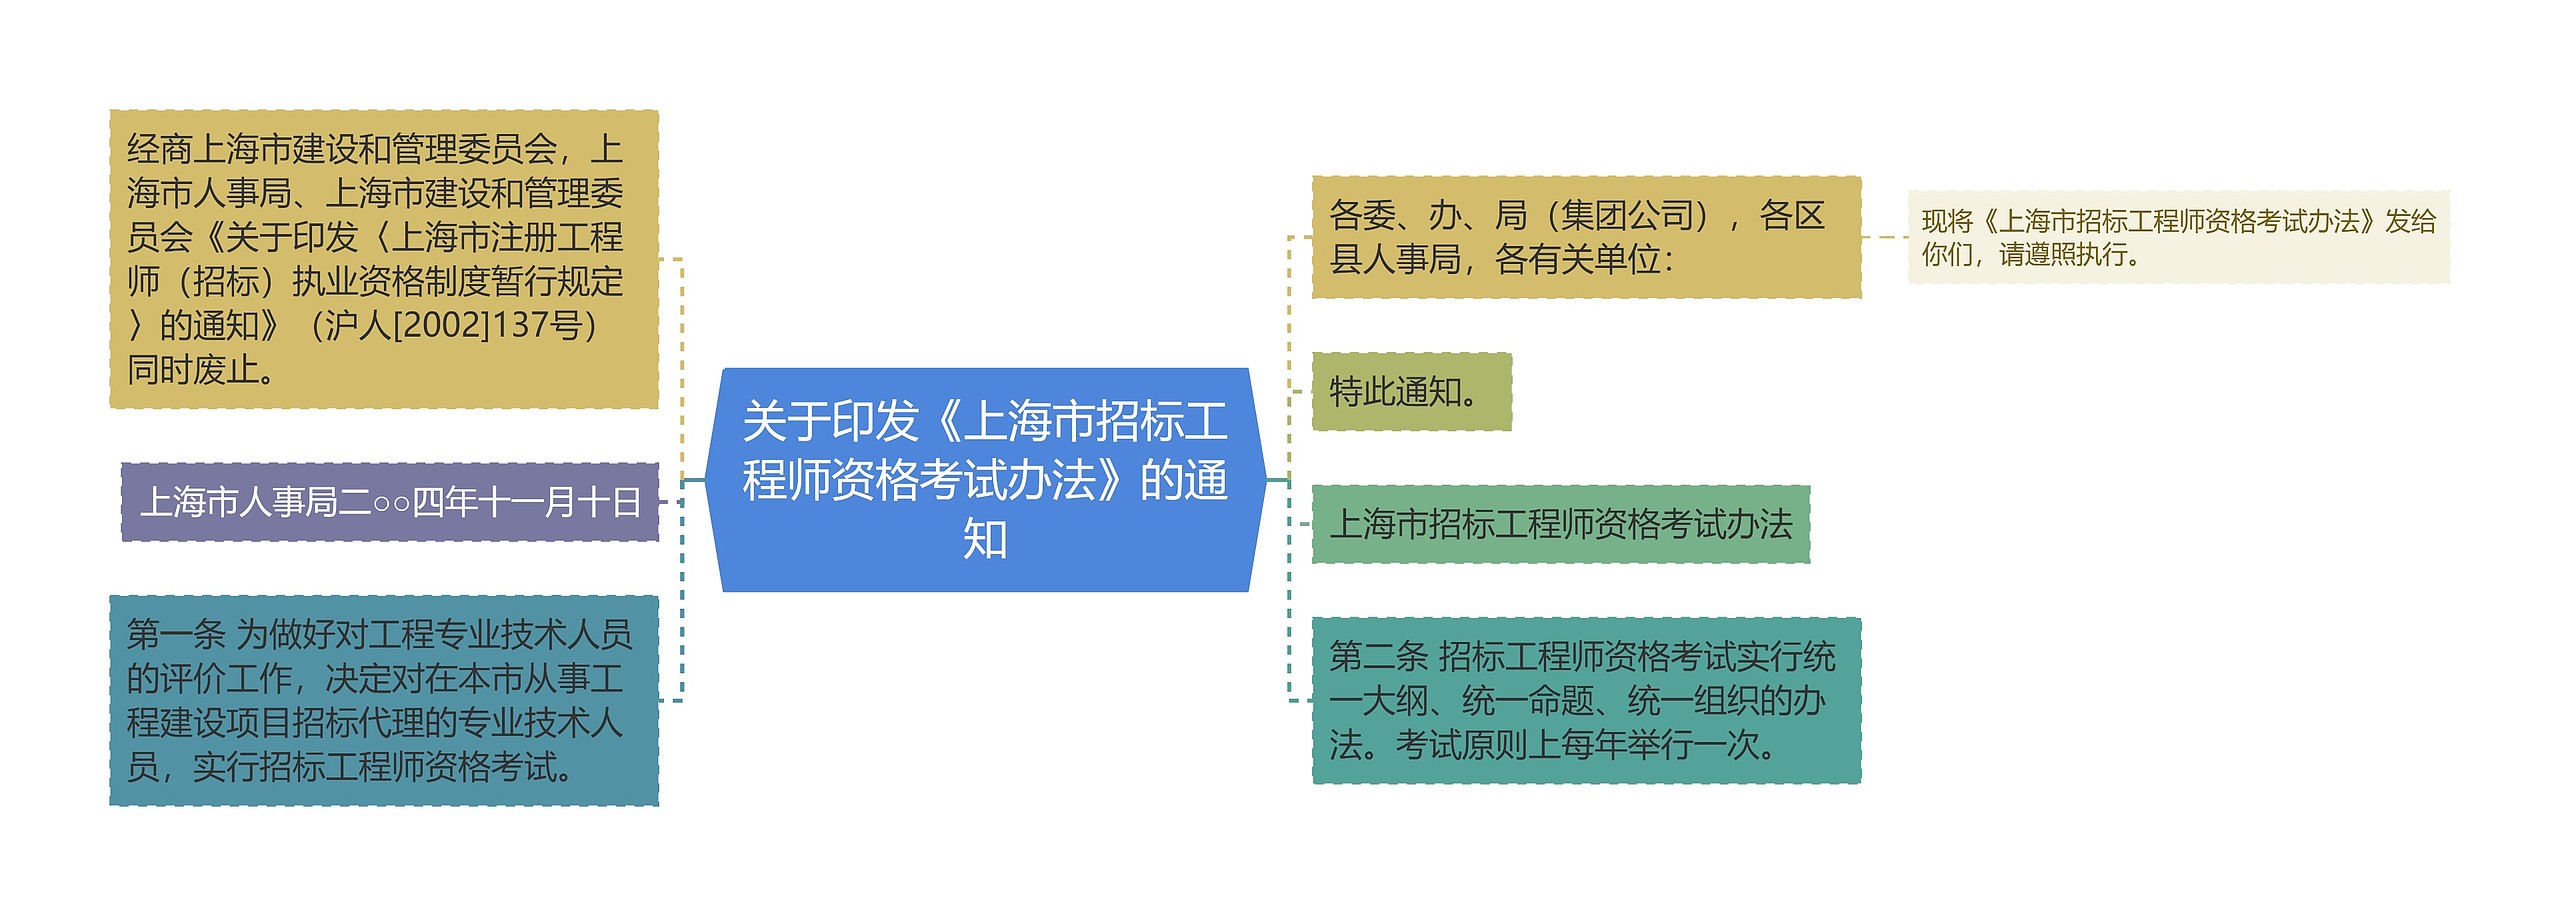 关于印发《上海市招标工程师资格考试办法》的通知